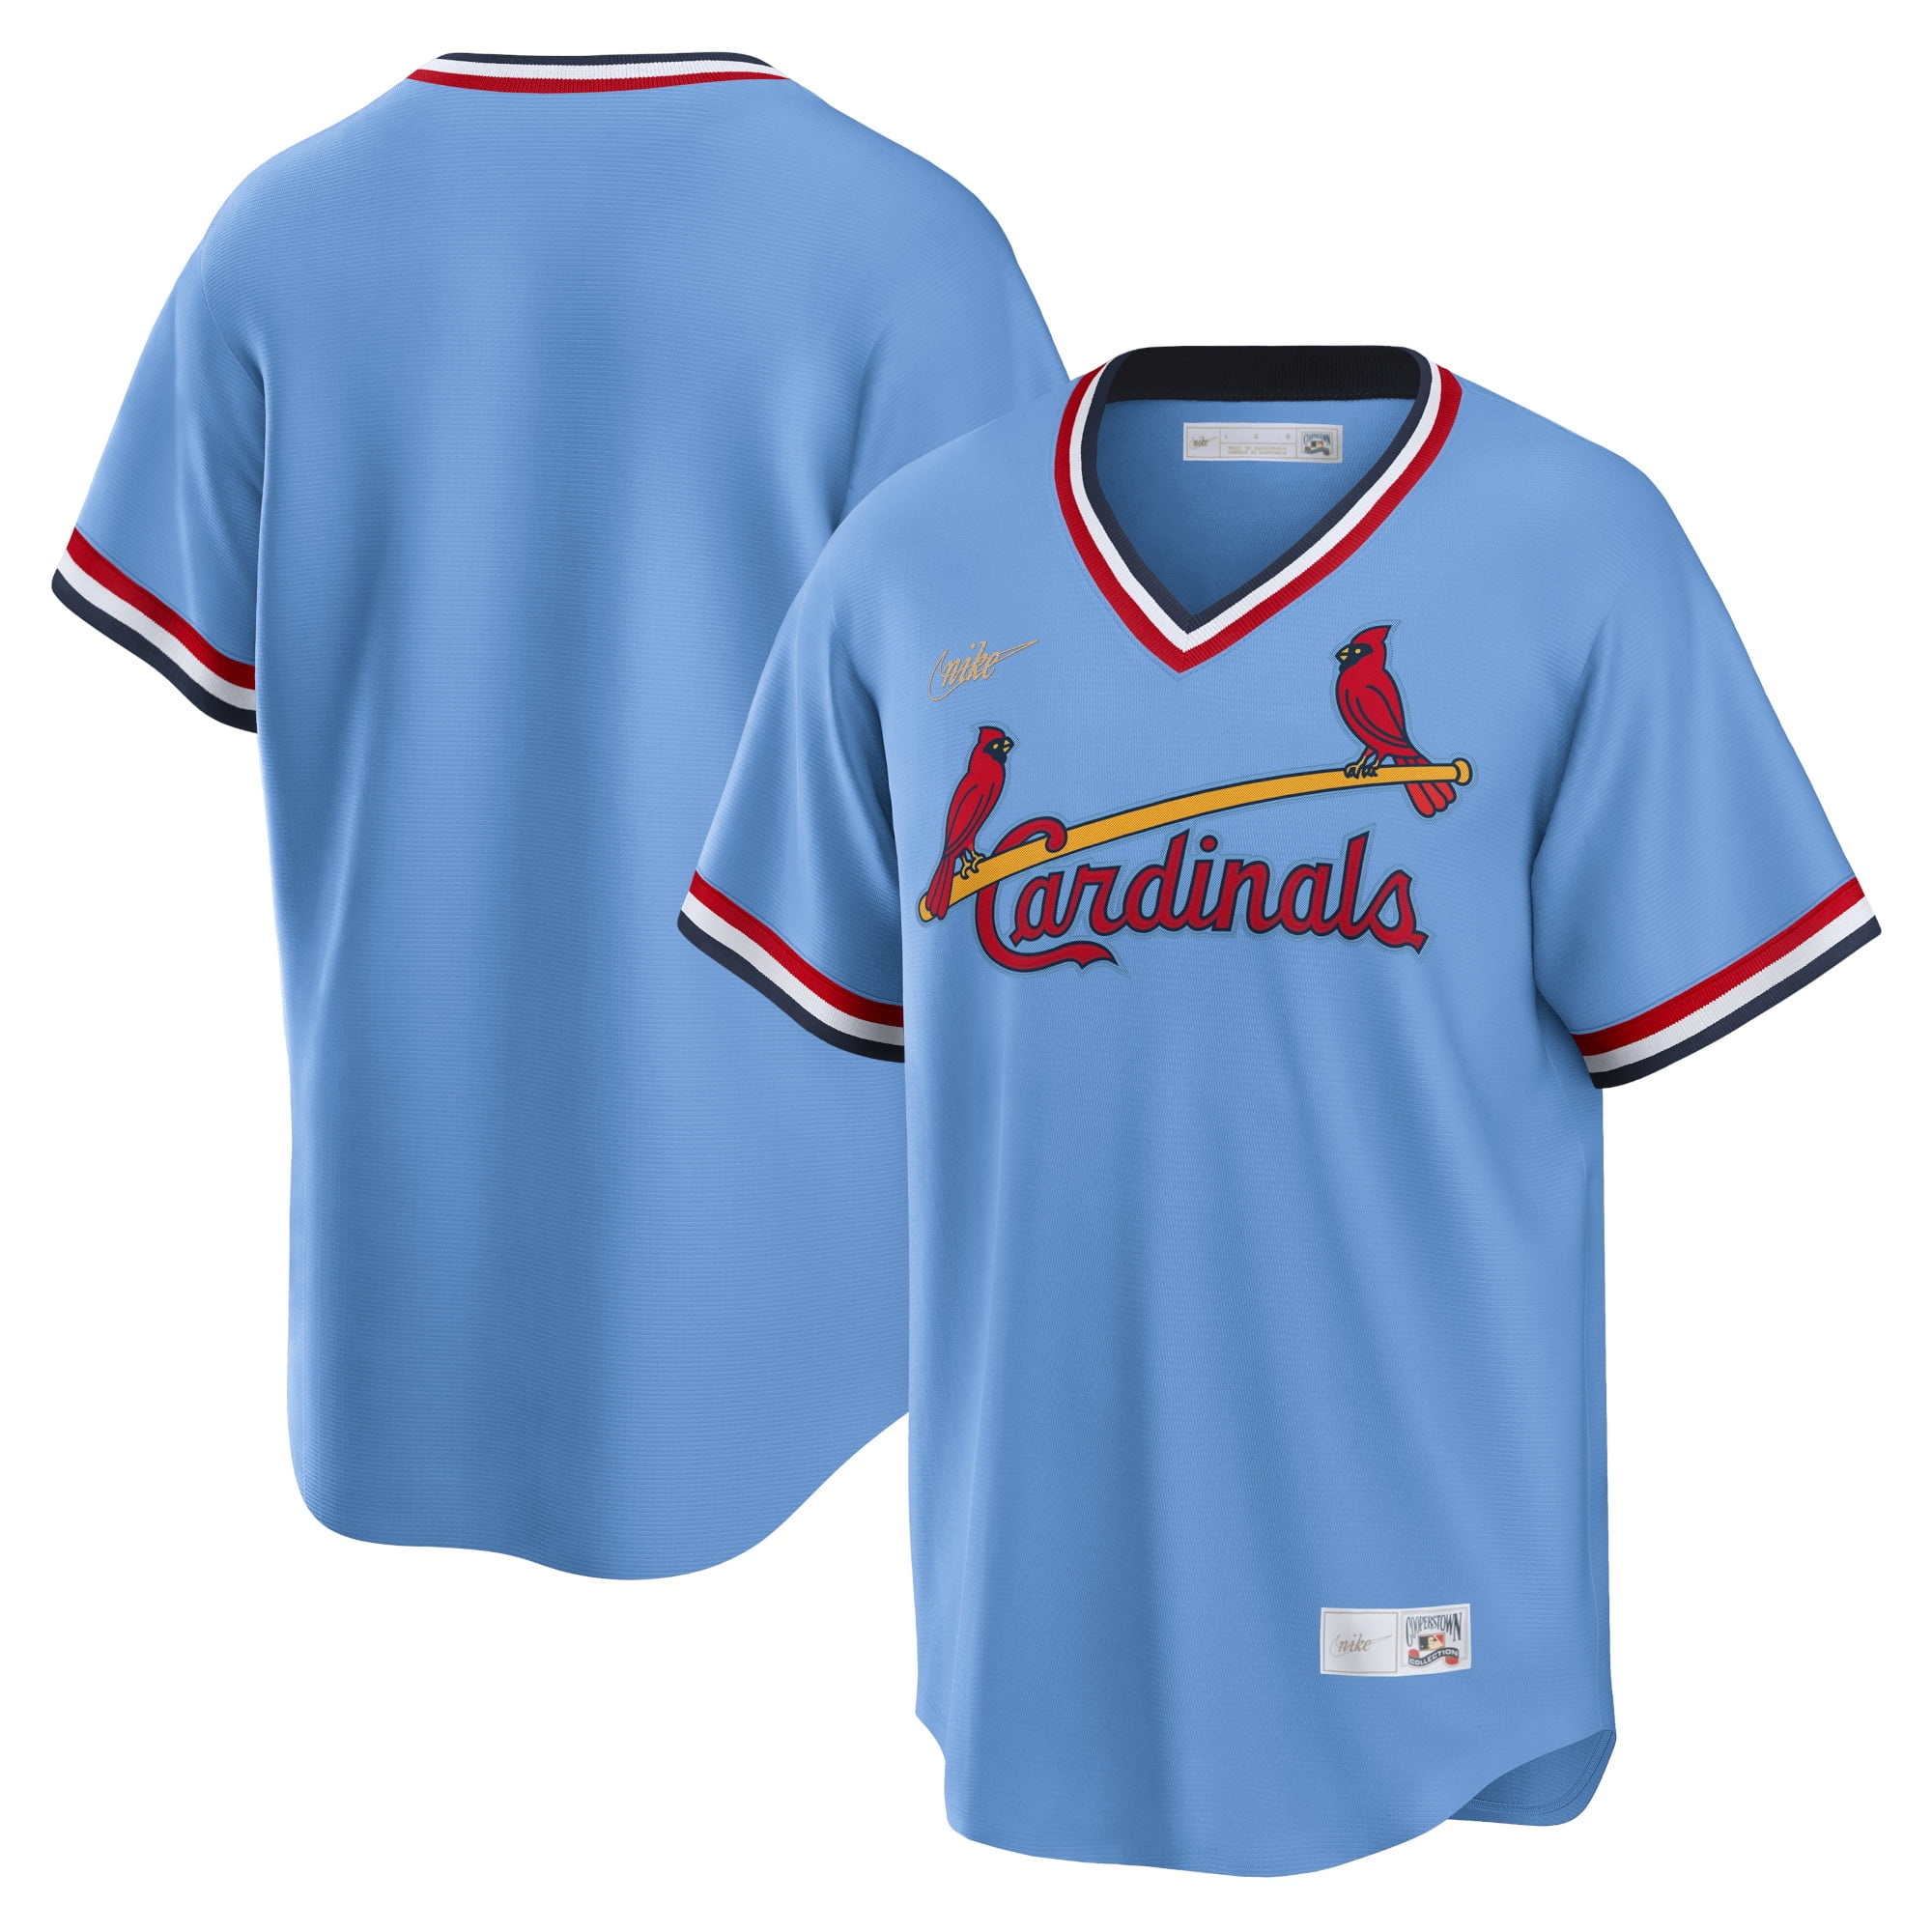 st cardinals jersey